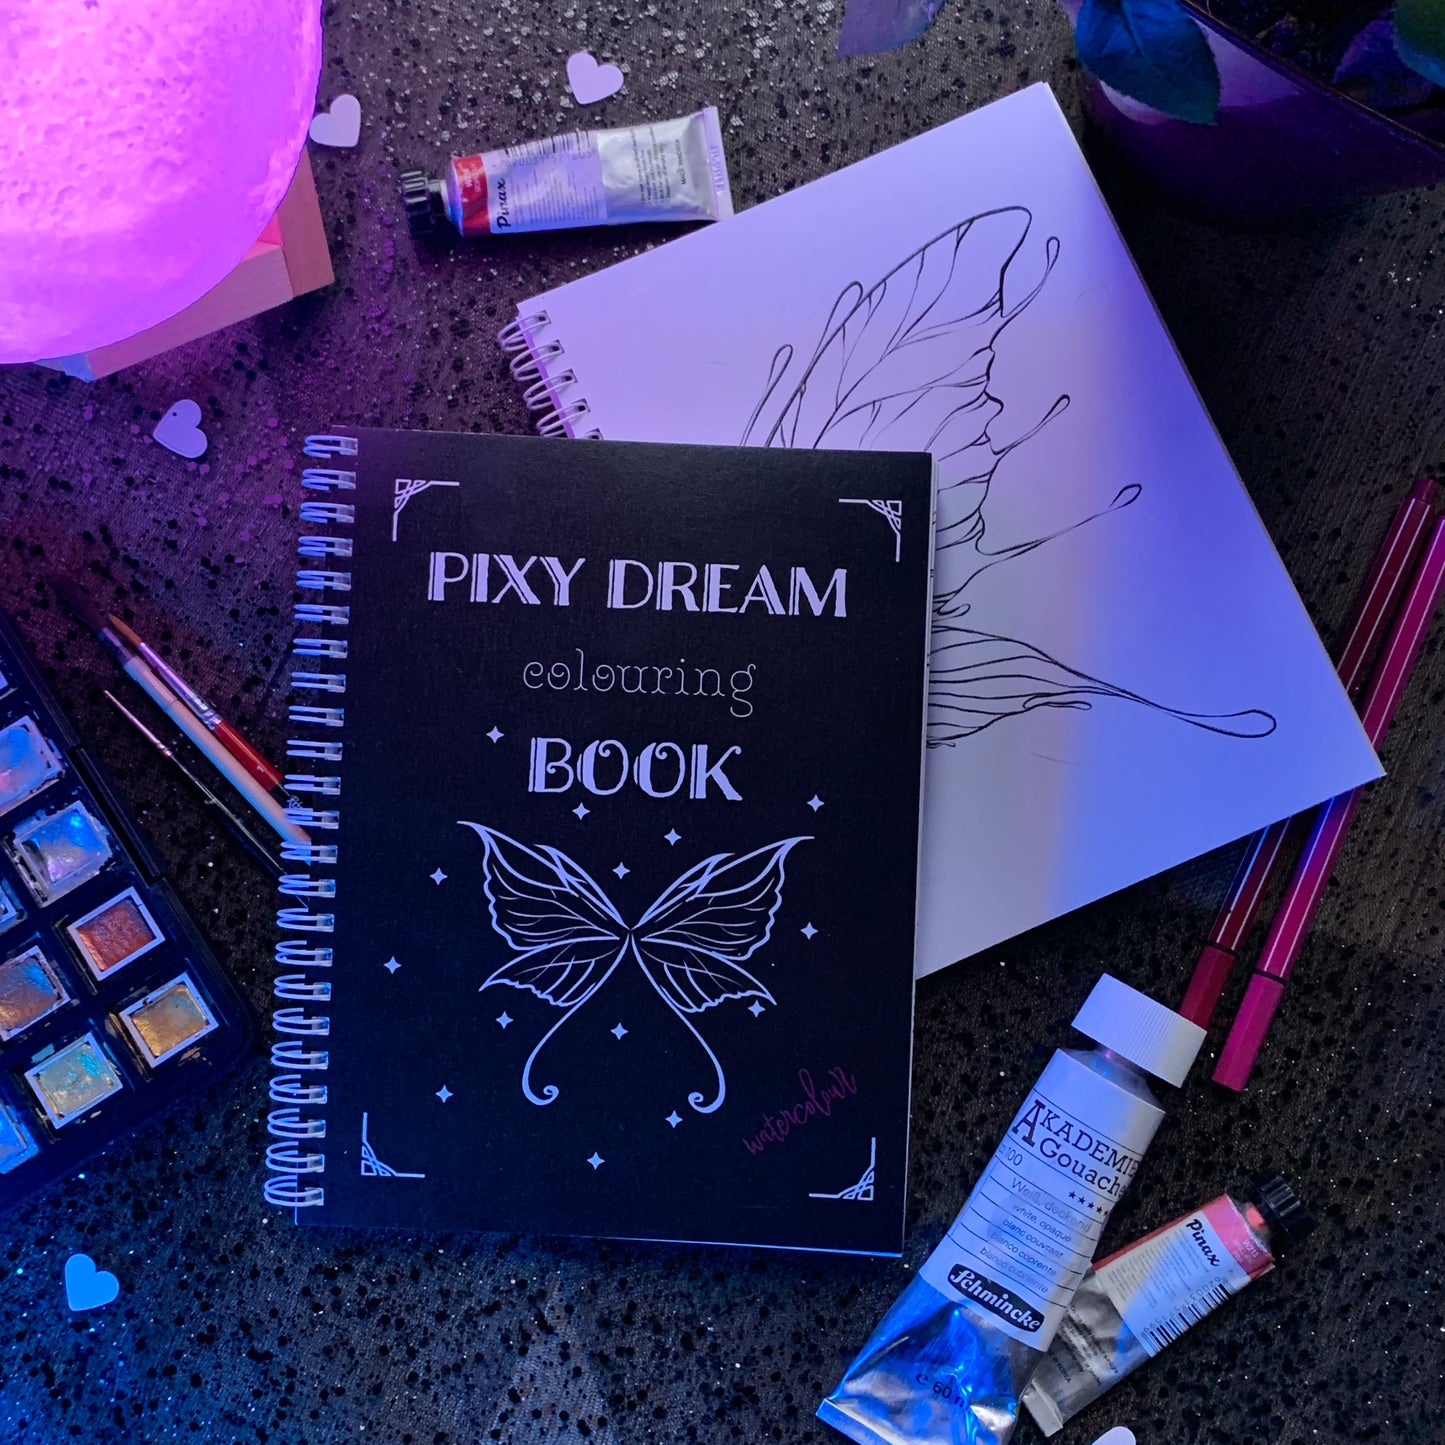 PIXY DREAM colouring book